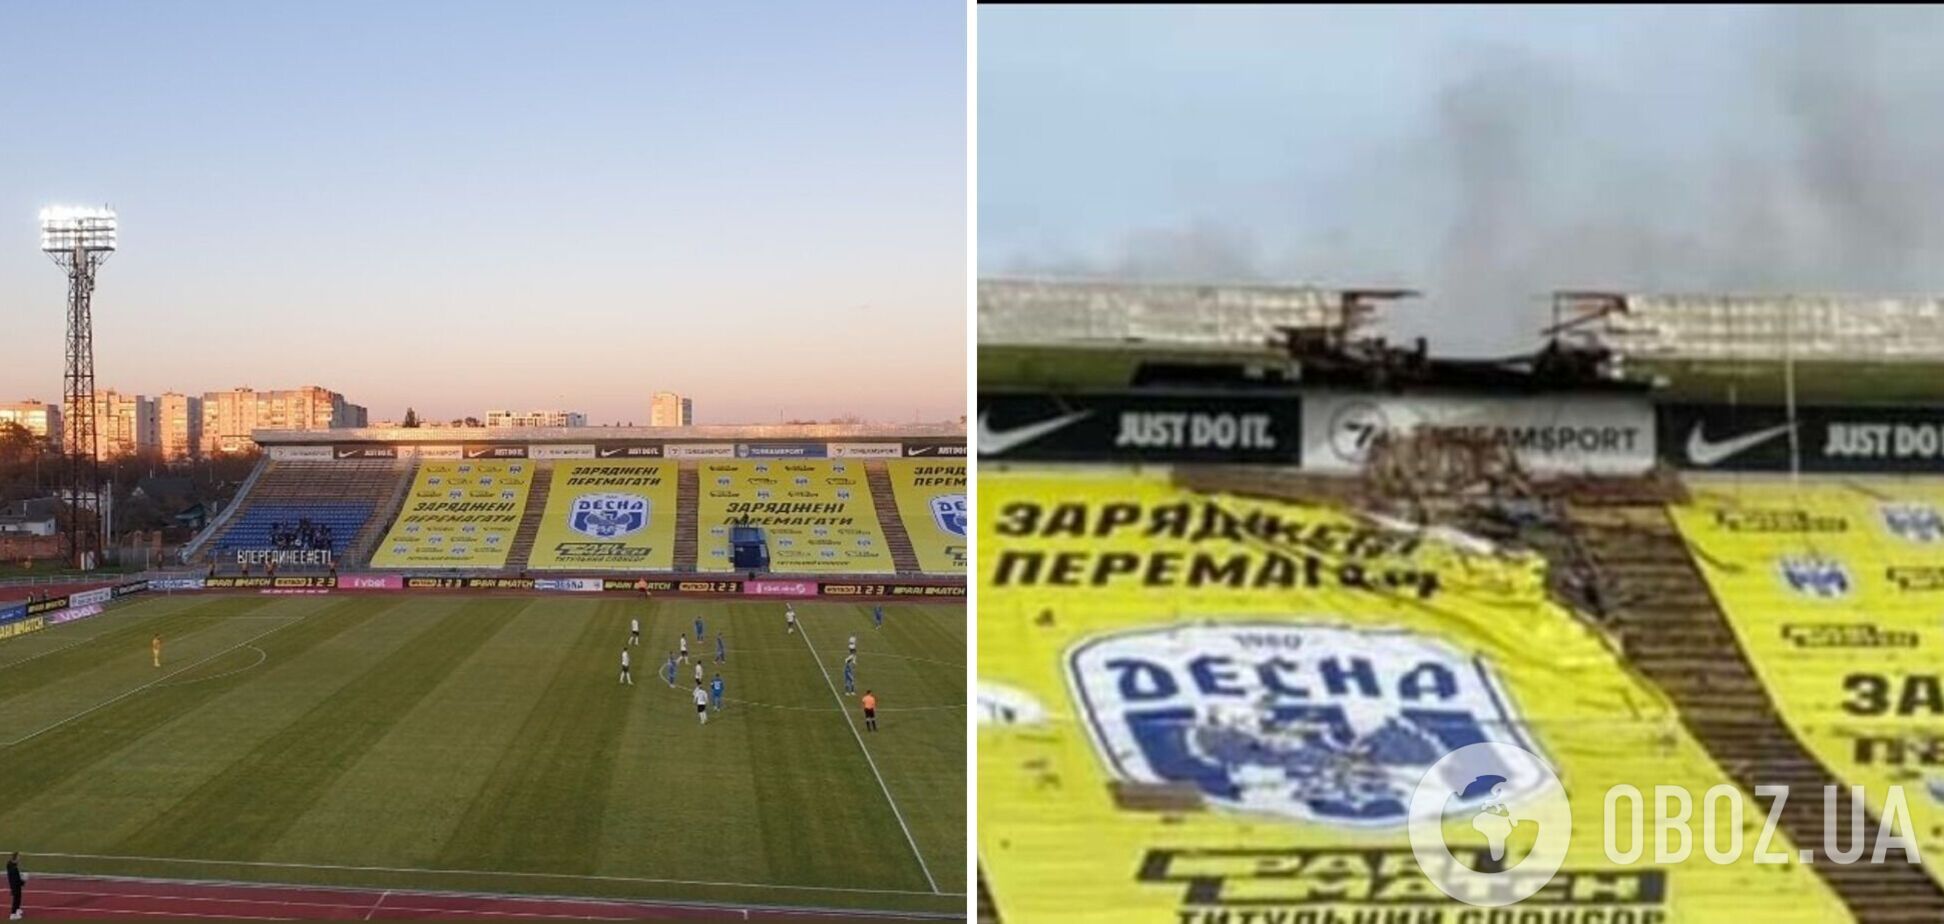 Стадион в Чернигове пострадал после обстрелов российскими оккупантами